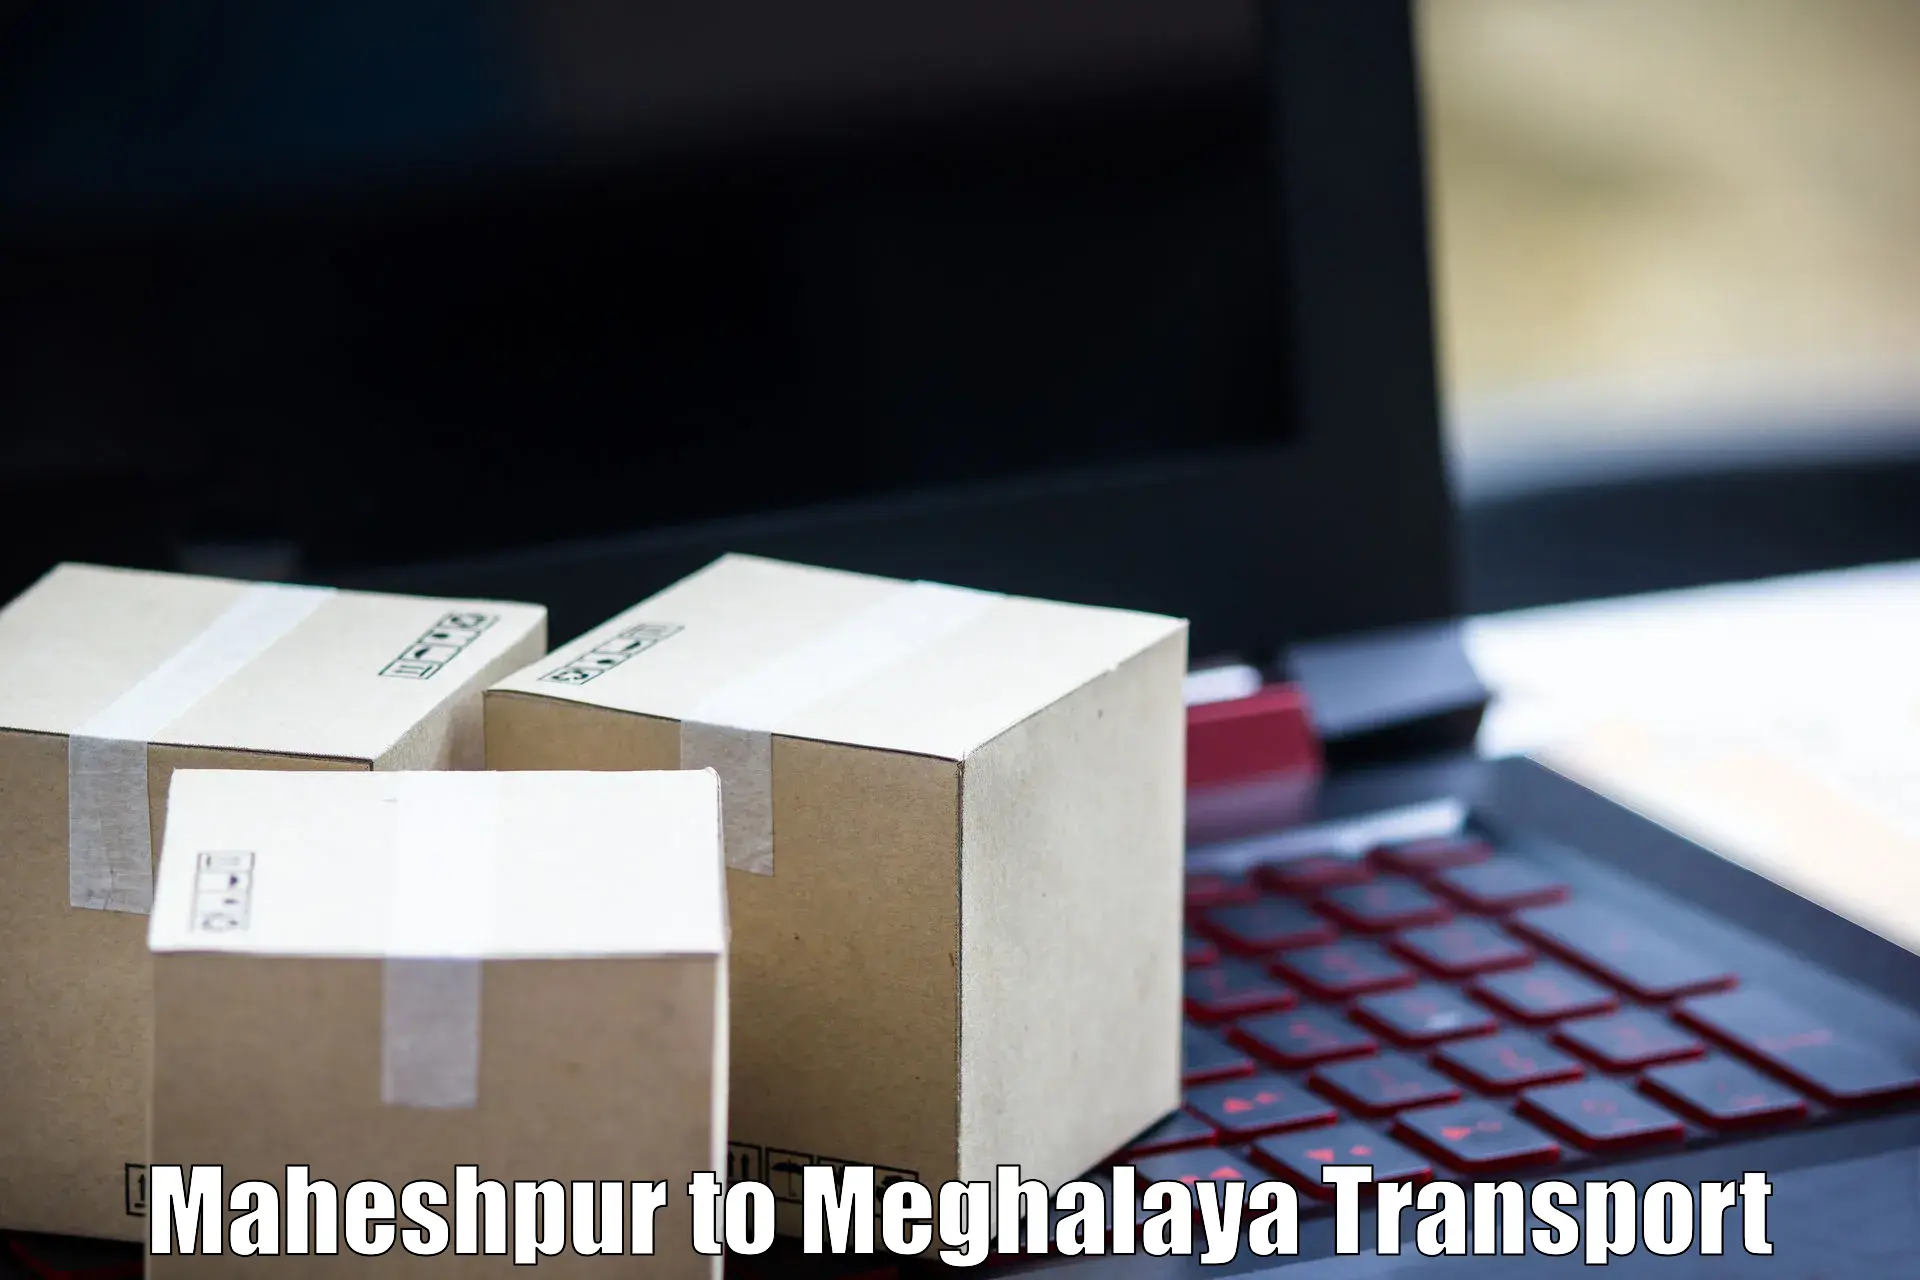 Nearby transport service Maheshpur to Tikrikilla